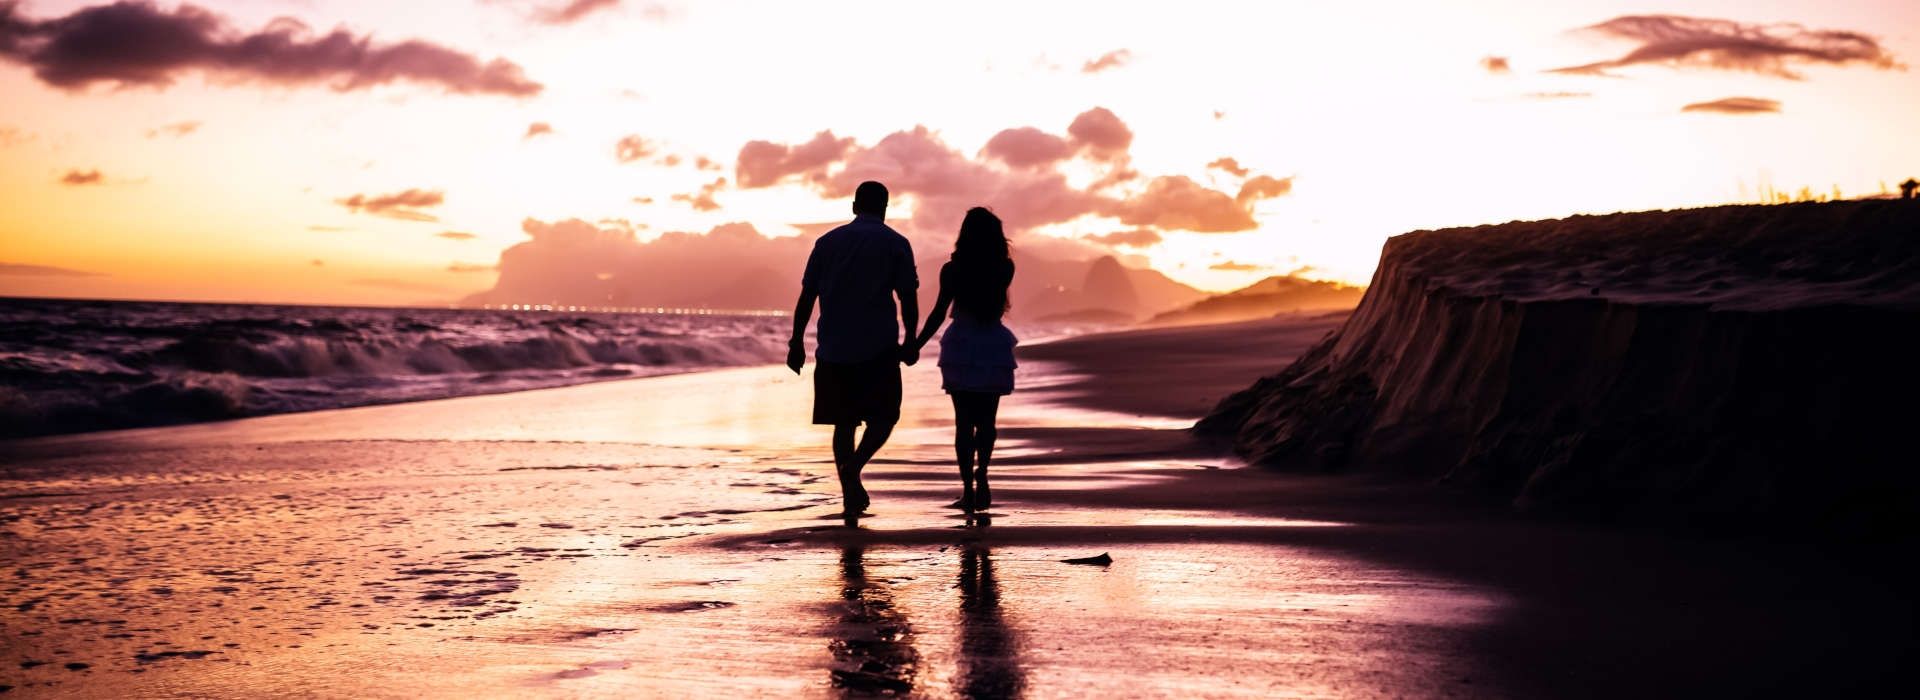 Romantic Activities for Couples in Playa d'en Bossa, Ibiza